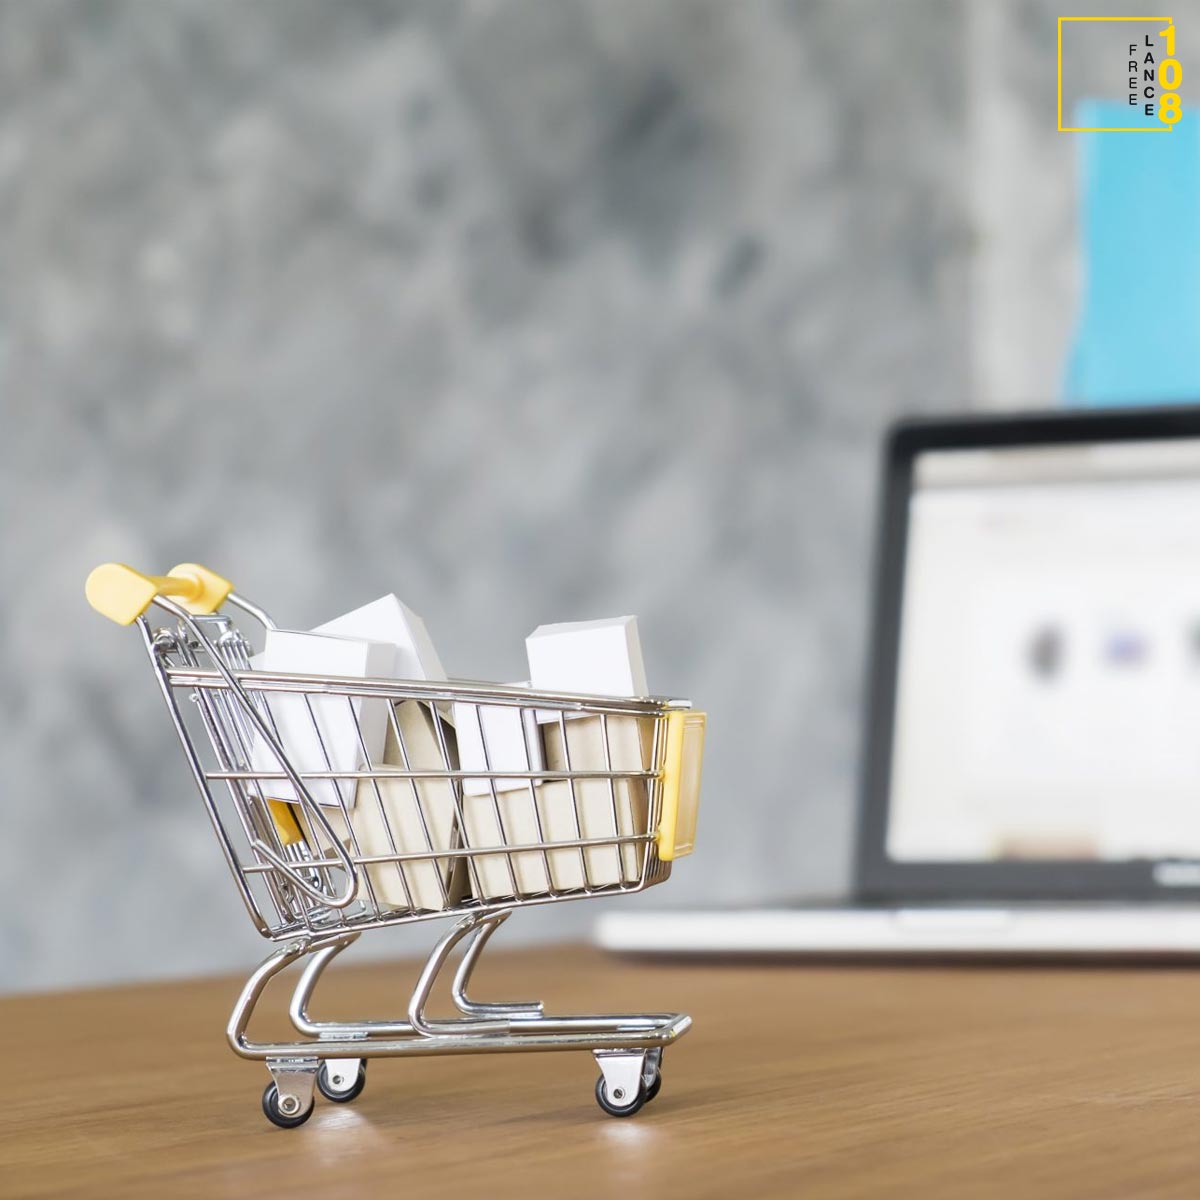 e-commerceธุรกิจอย่าทิ้งการค้าปลีกไปไหน